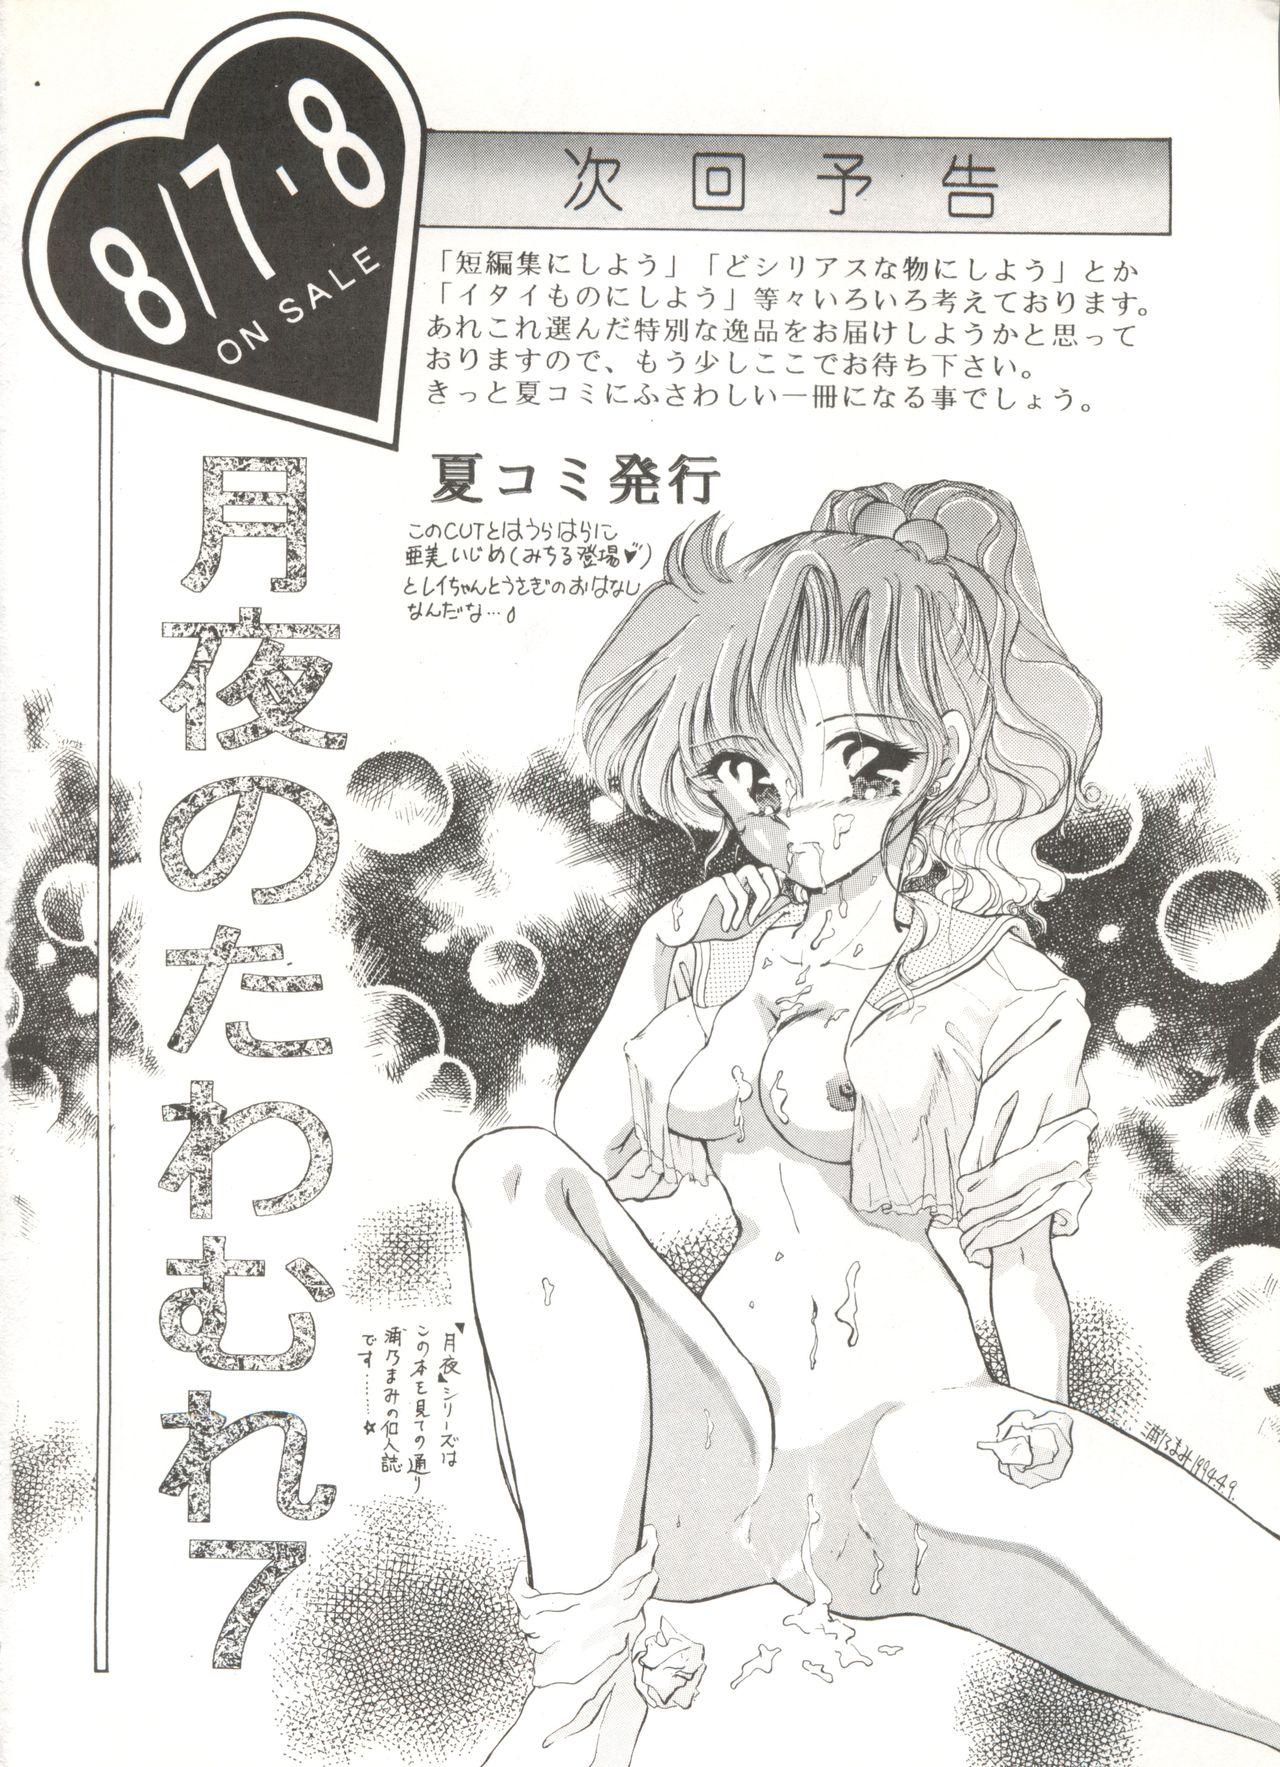 Jeune Mec Tsukiyo no Tawamure 6 - Sailor moon Hispanic - Page 54